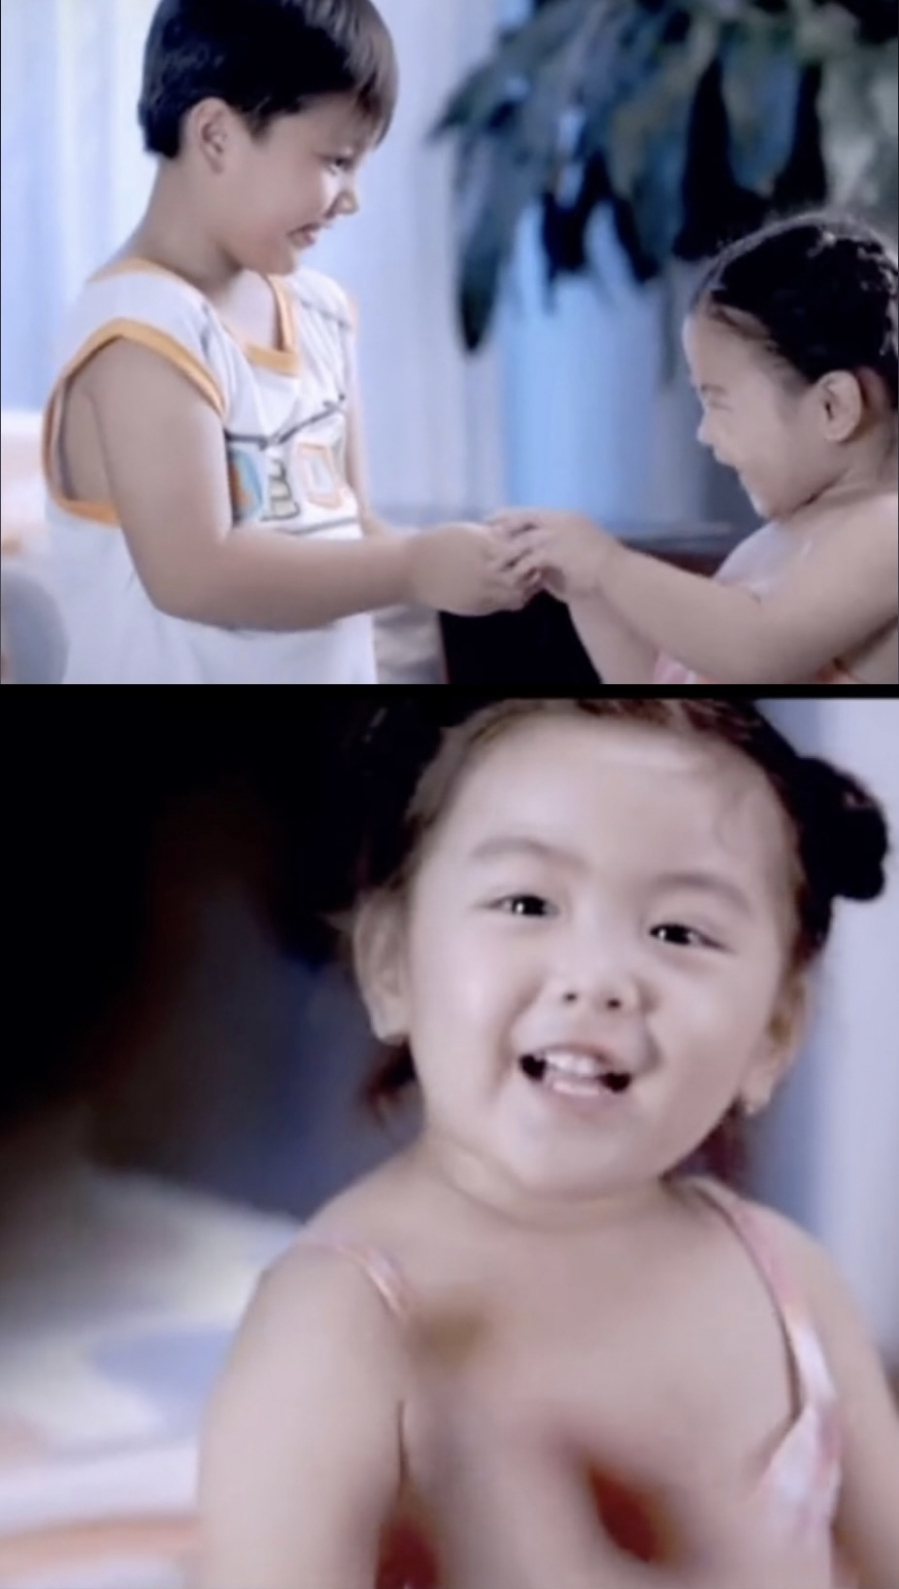 Con gái nhà Quyền Linh đã từng đóng quảng cáo lúc 3 tuổi, gây chú ý với khả năng diễn xuất tự nhiên